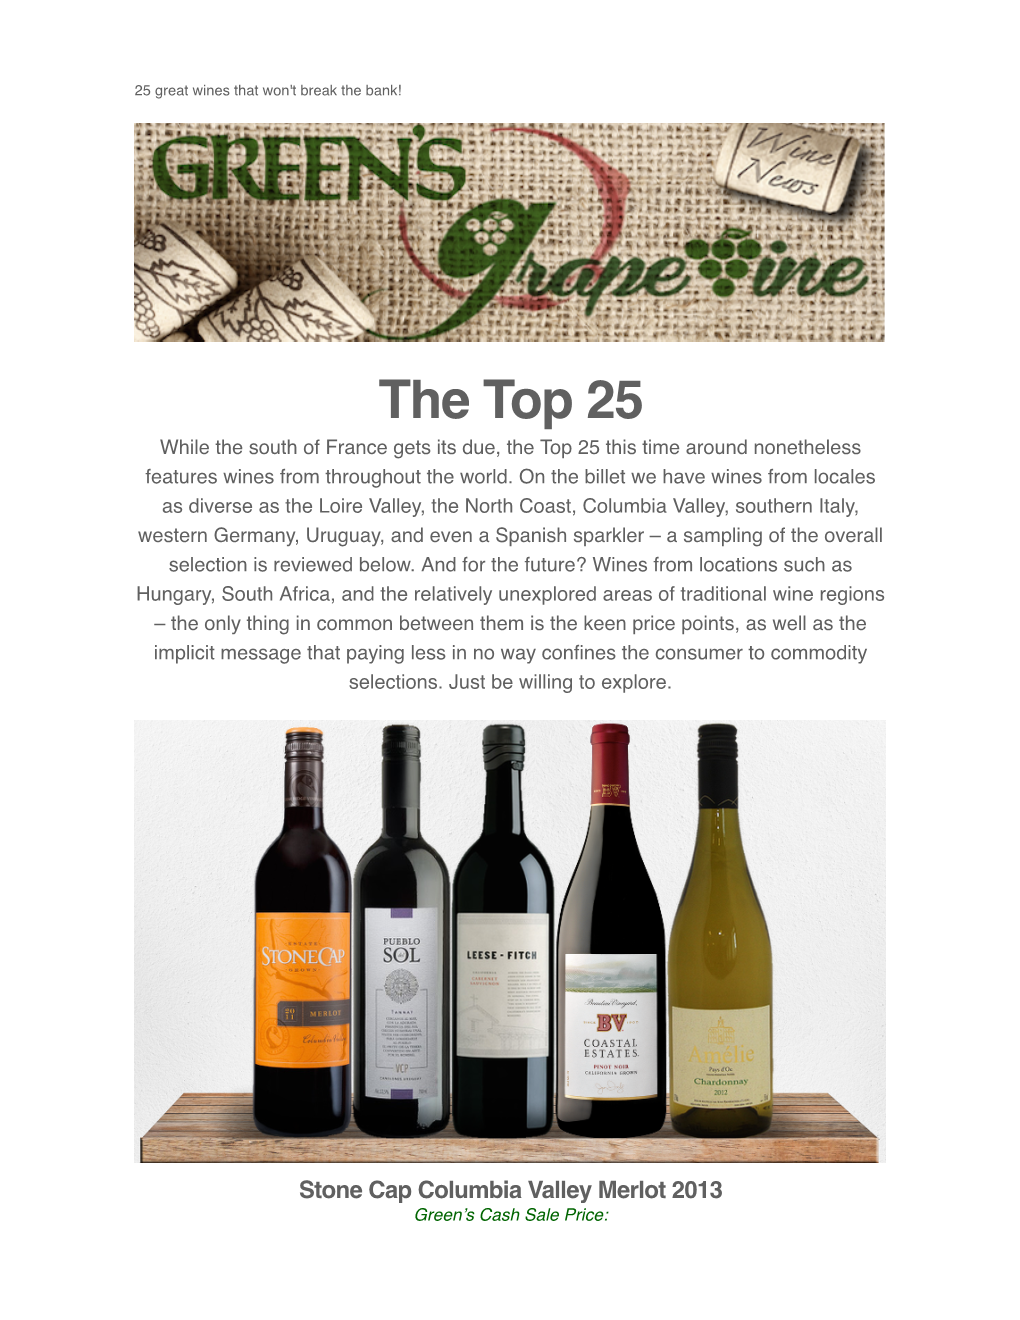 Top 25 Wines